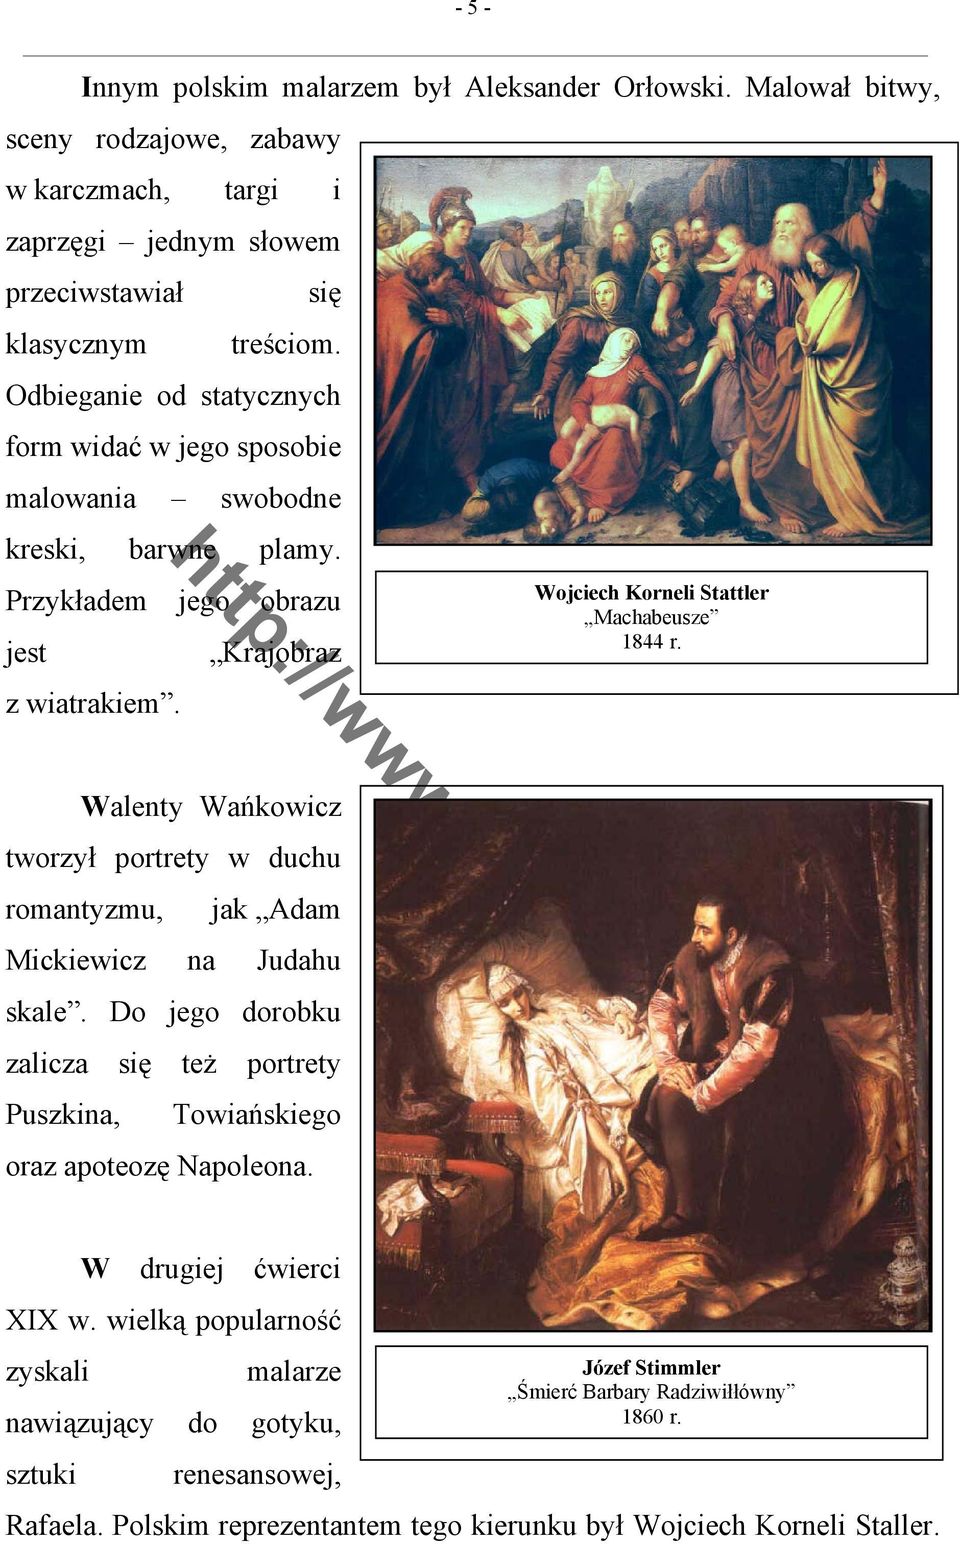 Walenty Wańkowicz tworzył portrety w duchu romantyzmu, jak Adam Mickiewicz na Judahu skale. Do jego dorobku zalicza się też portrety Puszkina, Towiańskiego oraz apoteozę Napoleona.